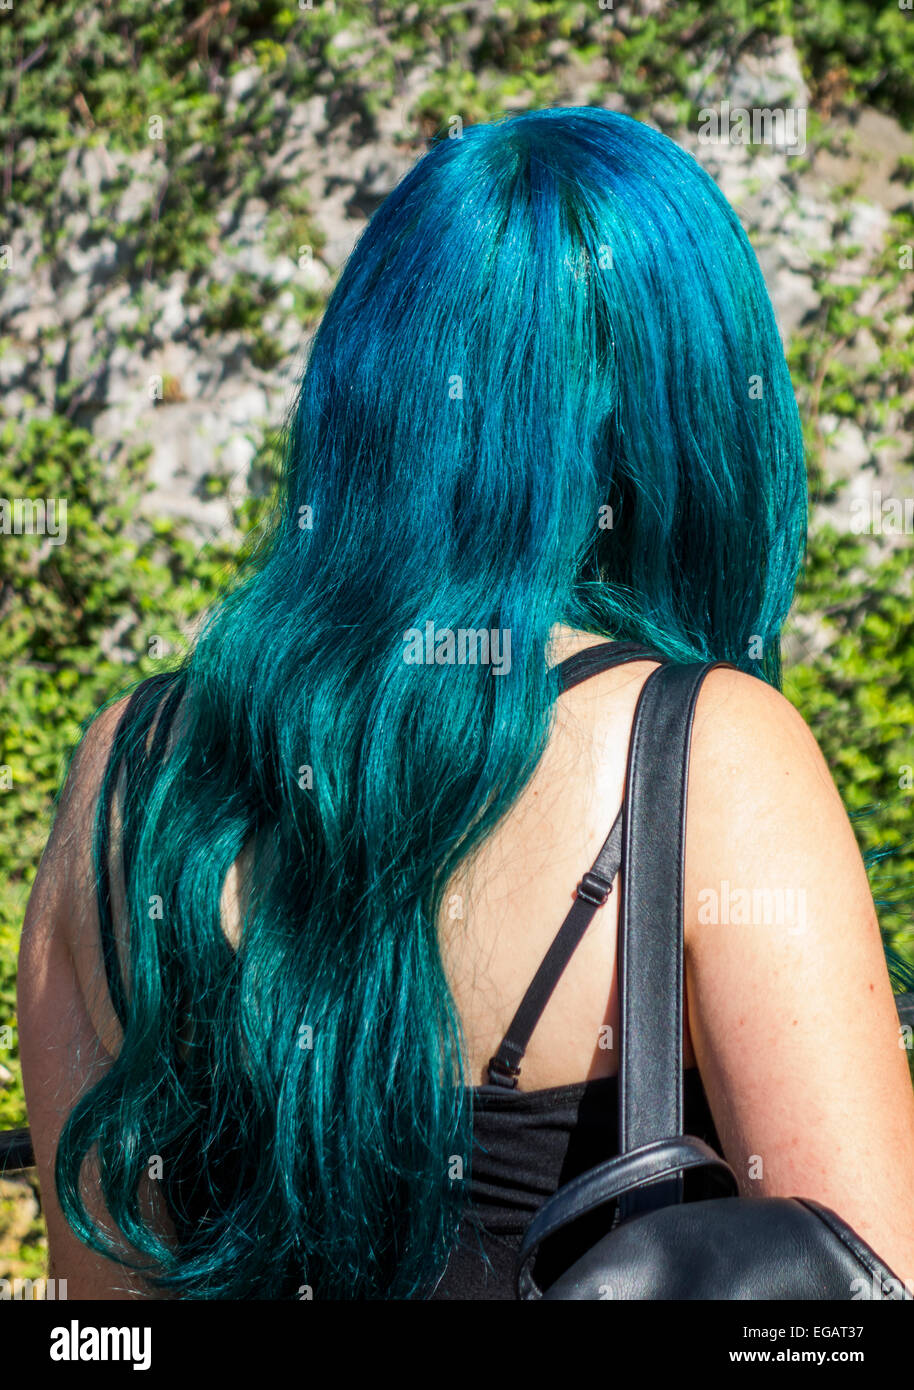 Fille aux cheveux teints en bleu, Santiago, Chili Banque D'Images